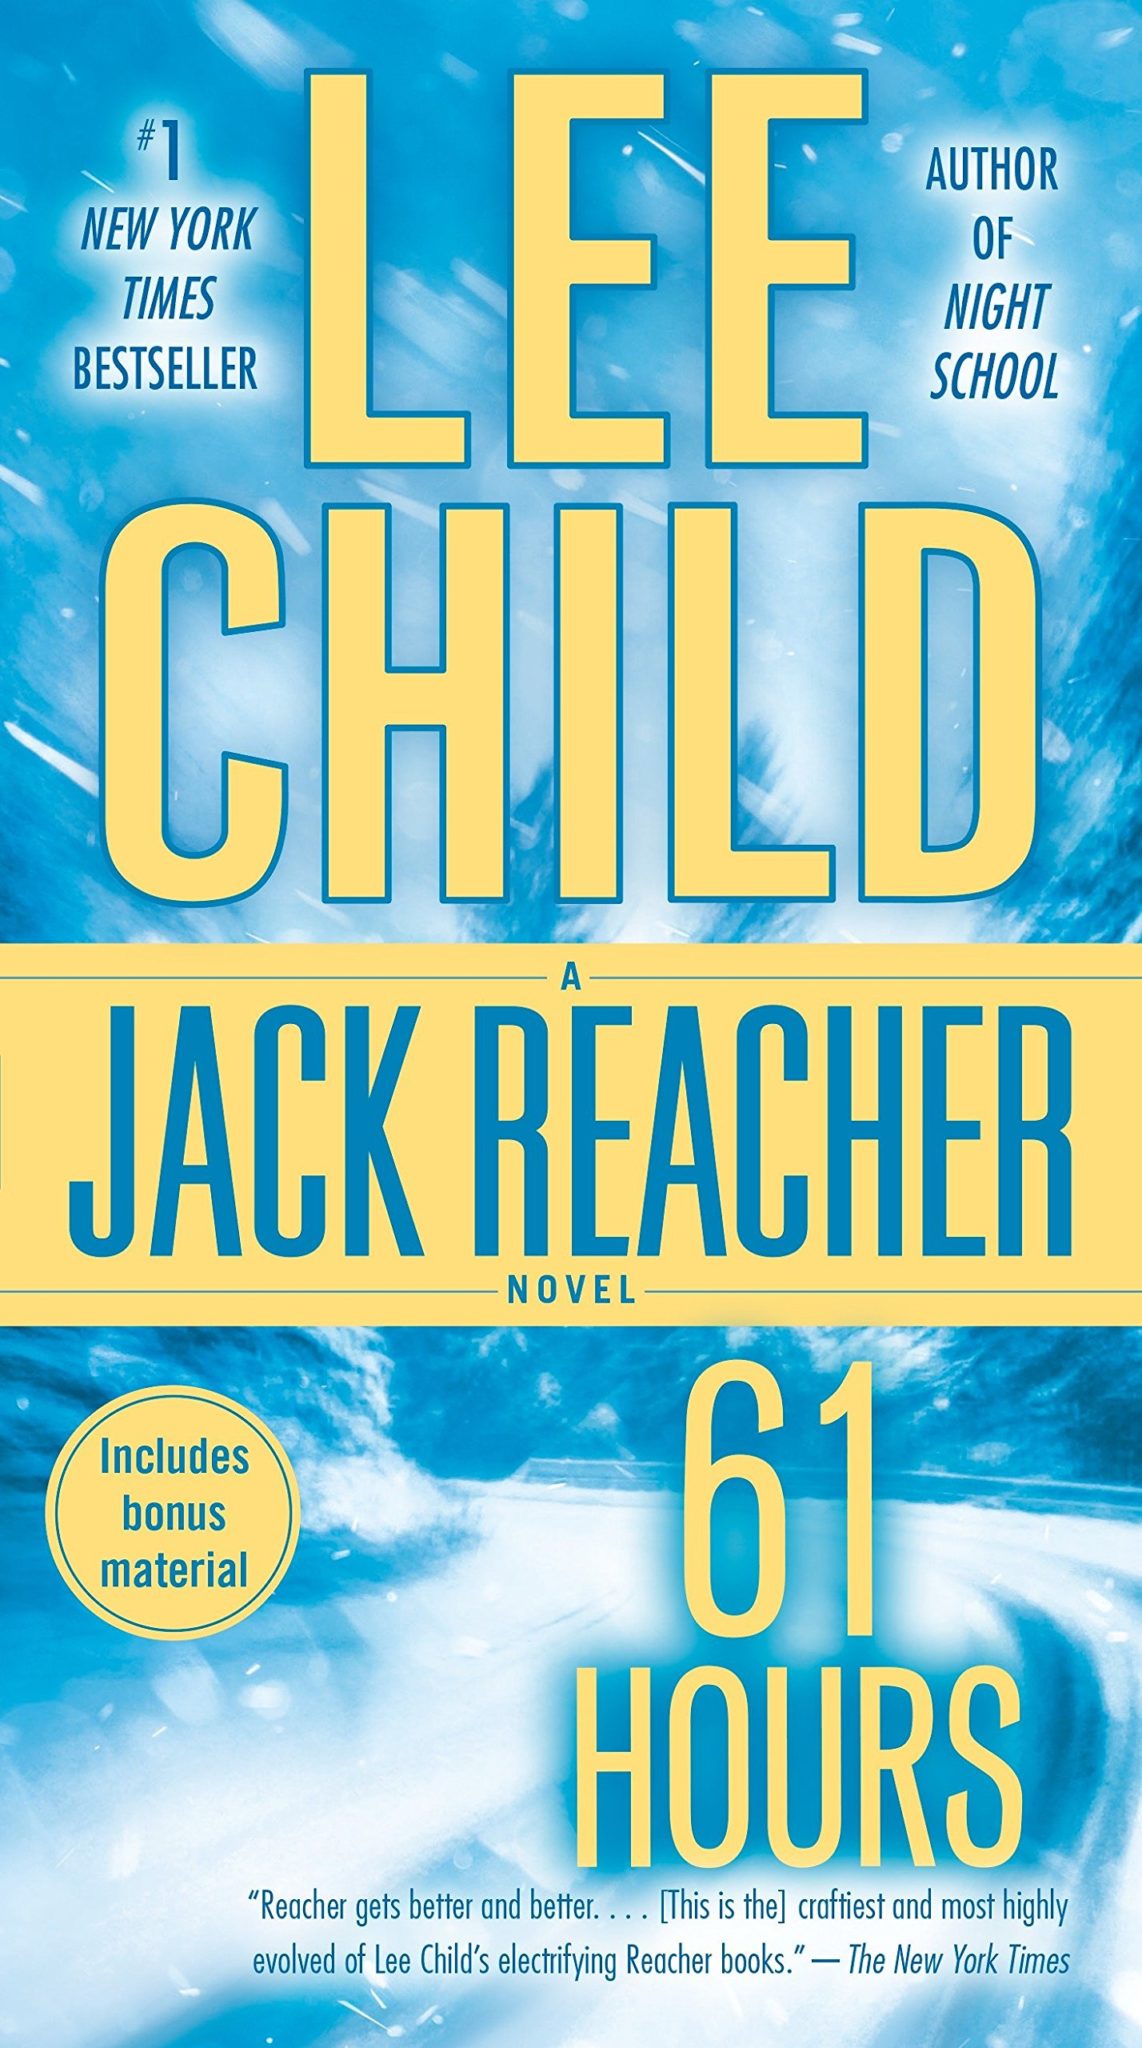 The Full List of Jack Reacher Books in Order